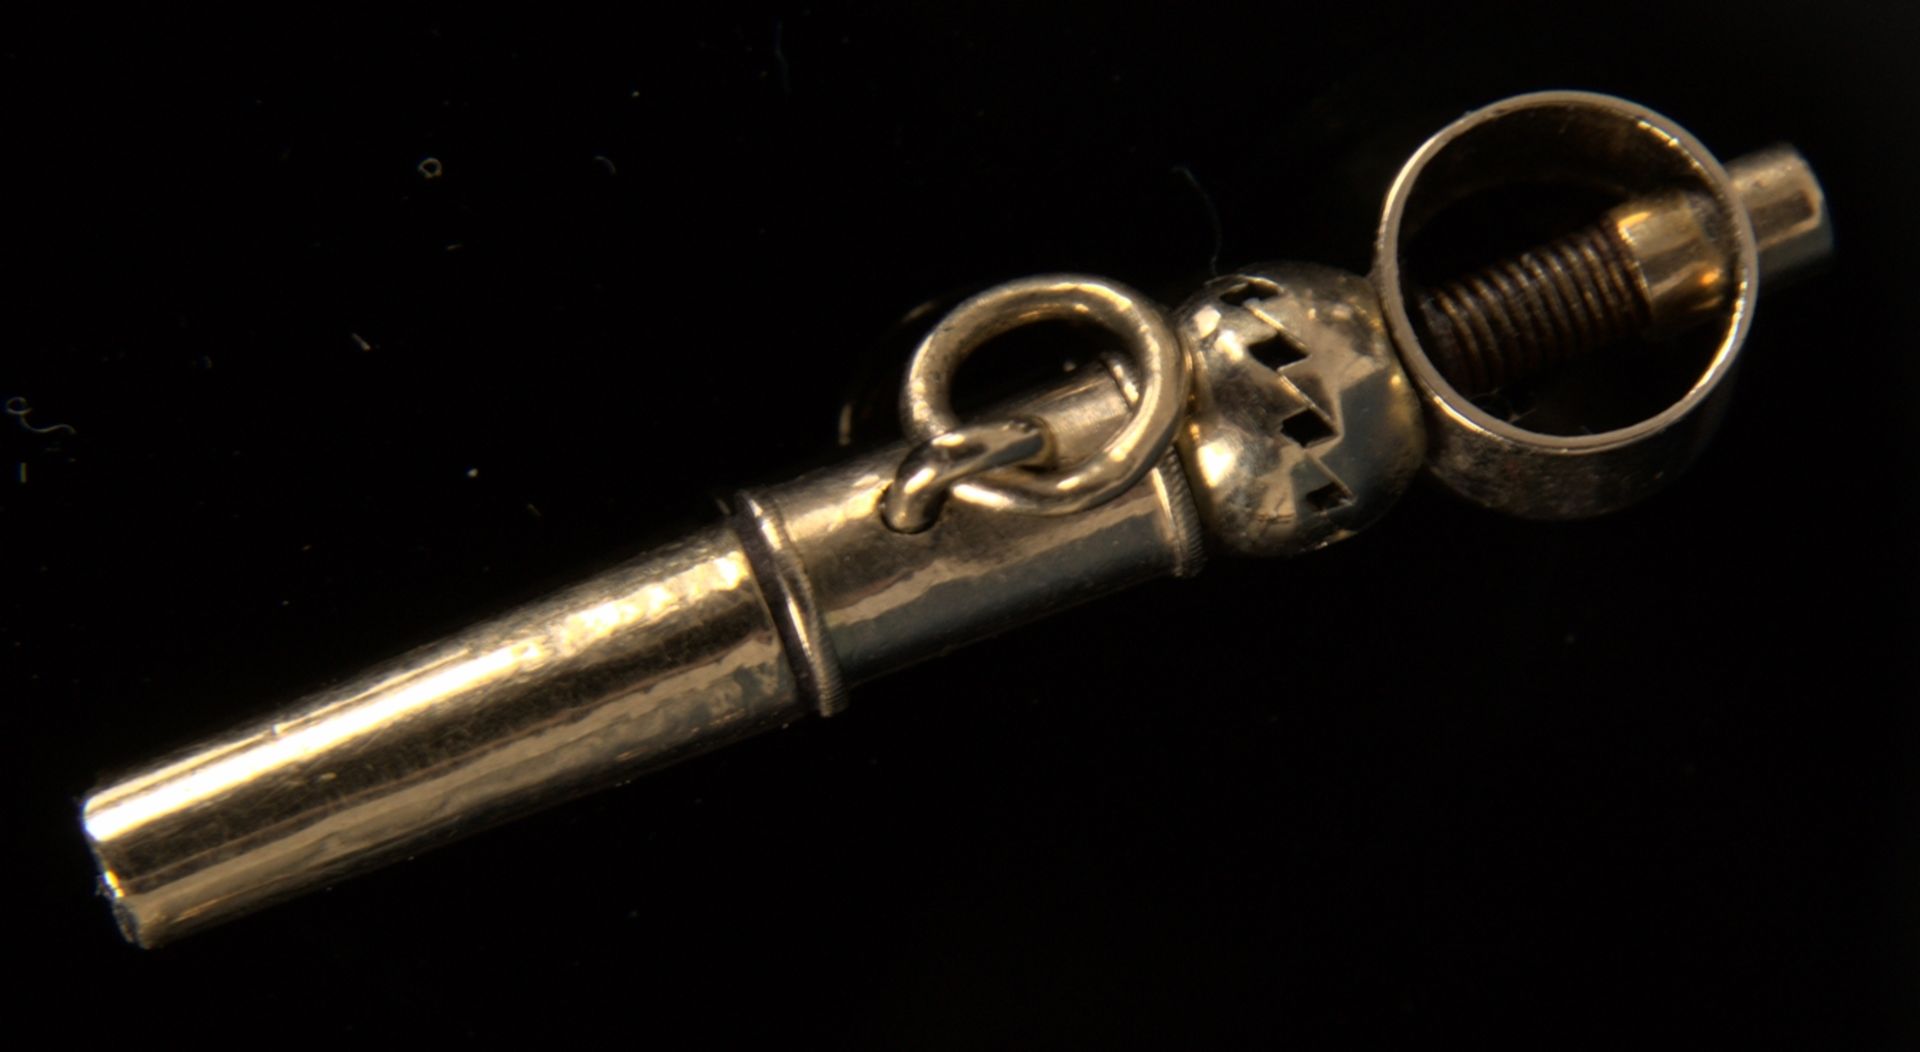 9teilige Sammlung versch. Taschenuhrenschlüssel, überwiegend 19. Jhd. Versch. Alter, Größen, - Bild 11 aus 18